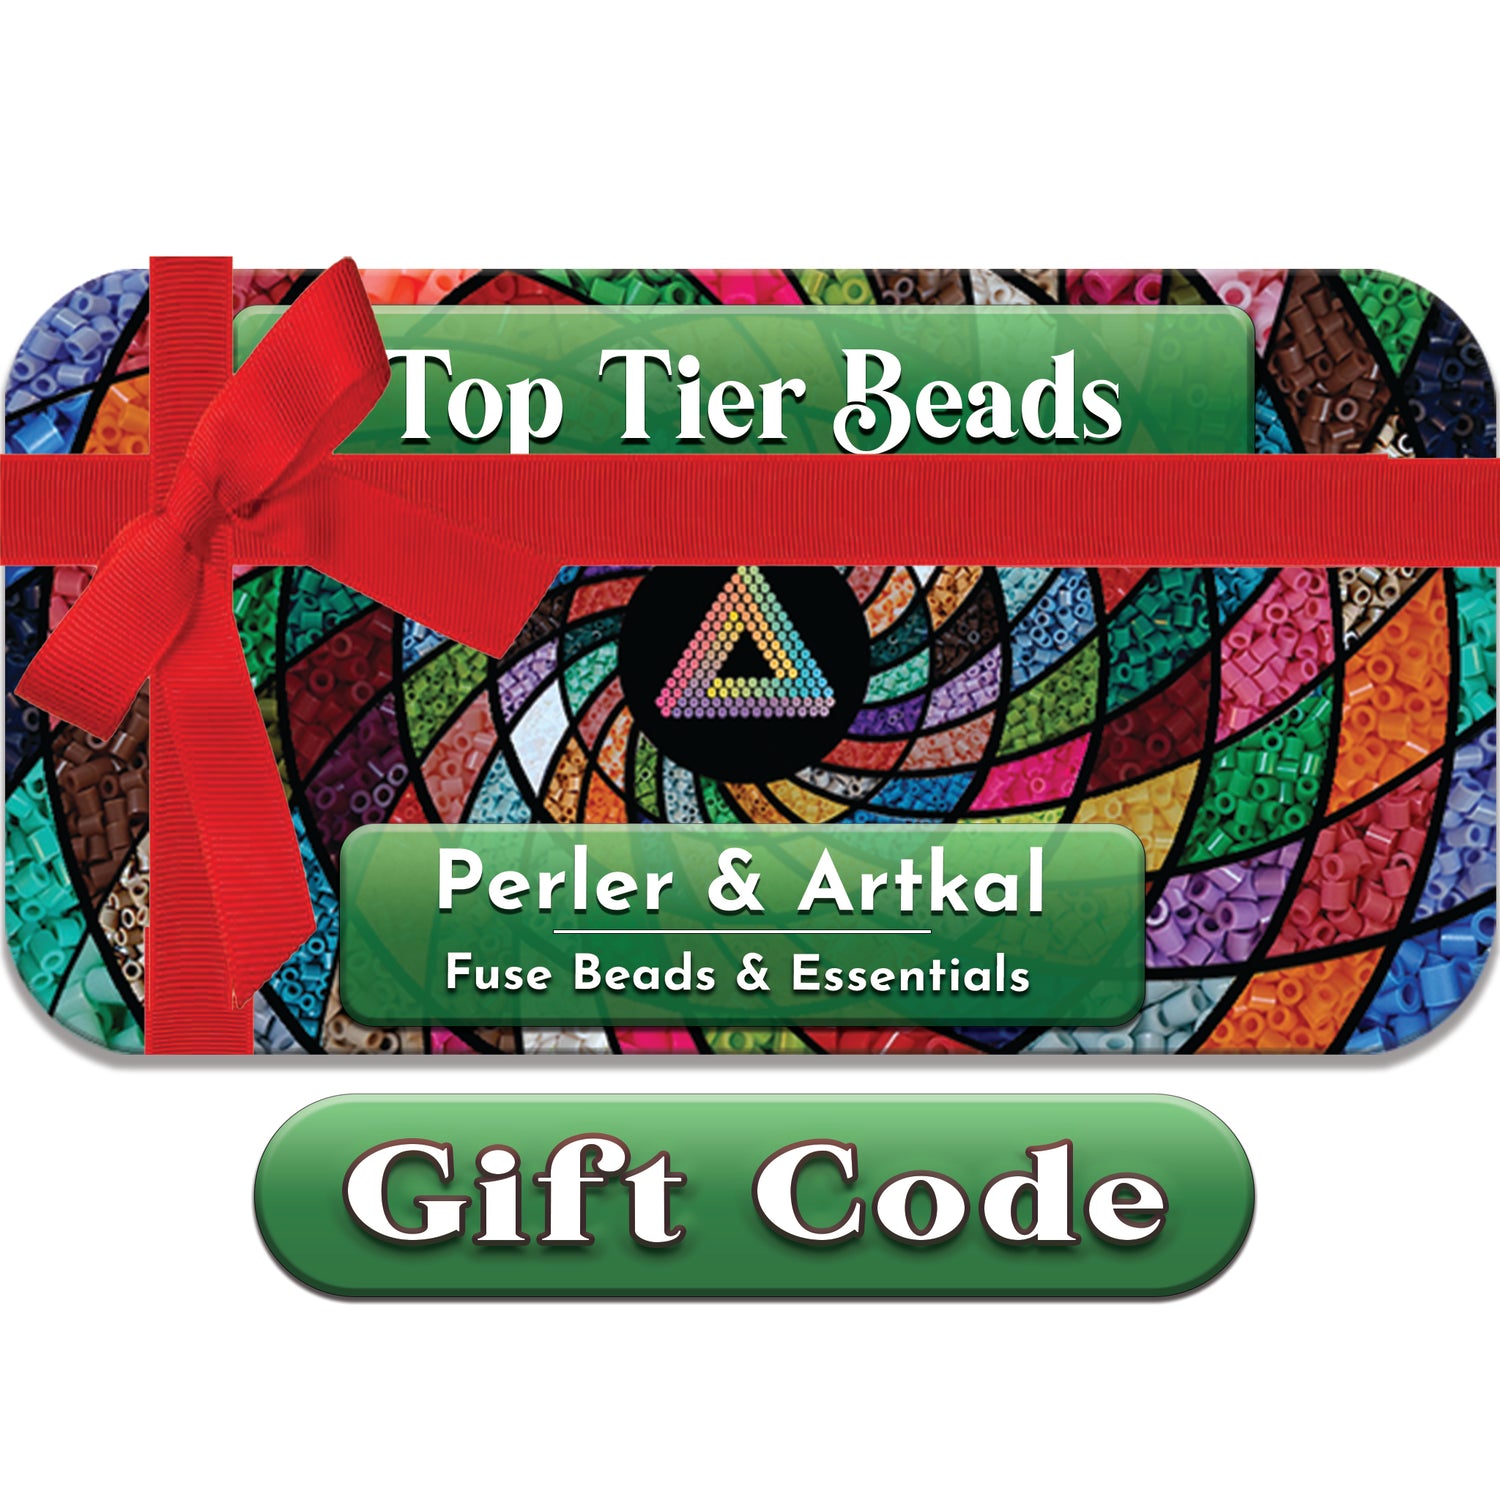 Top Tier Beads Gift Code